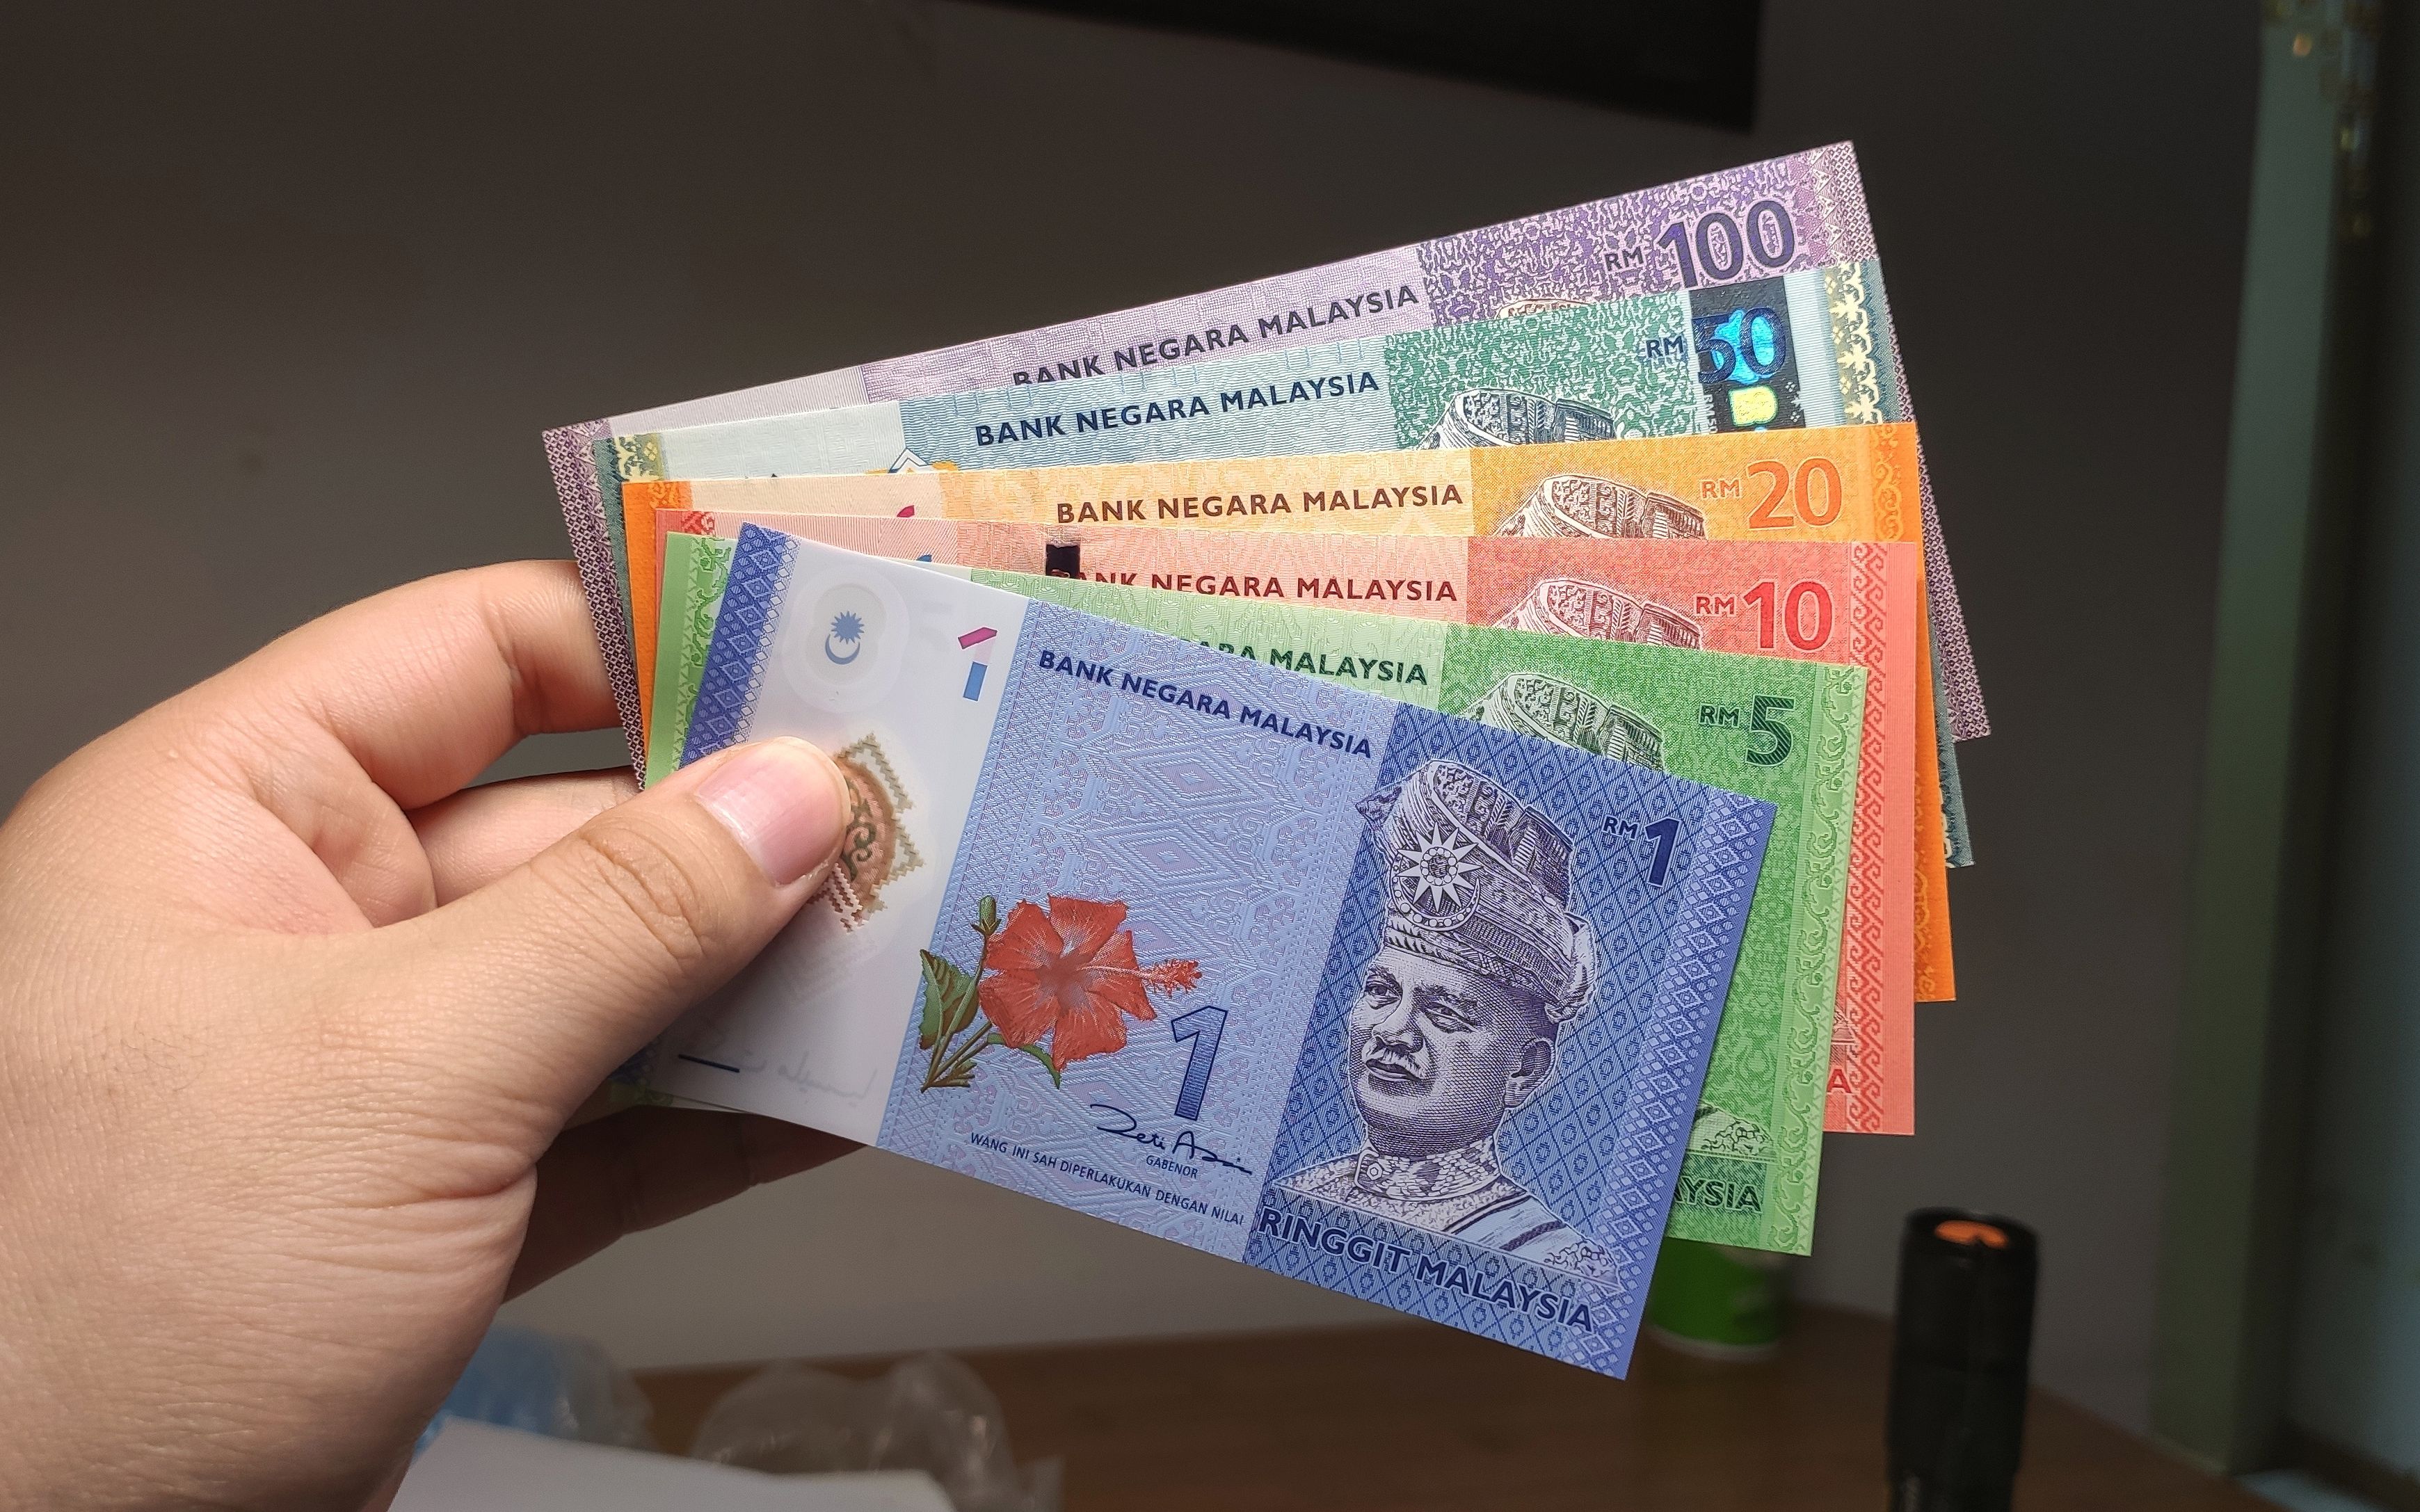 马拉西亚货币图片